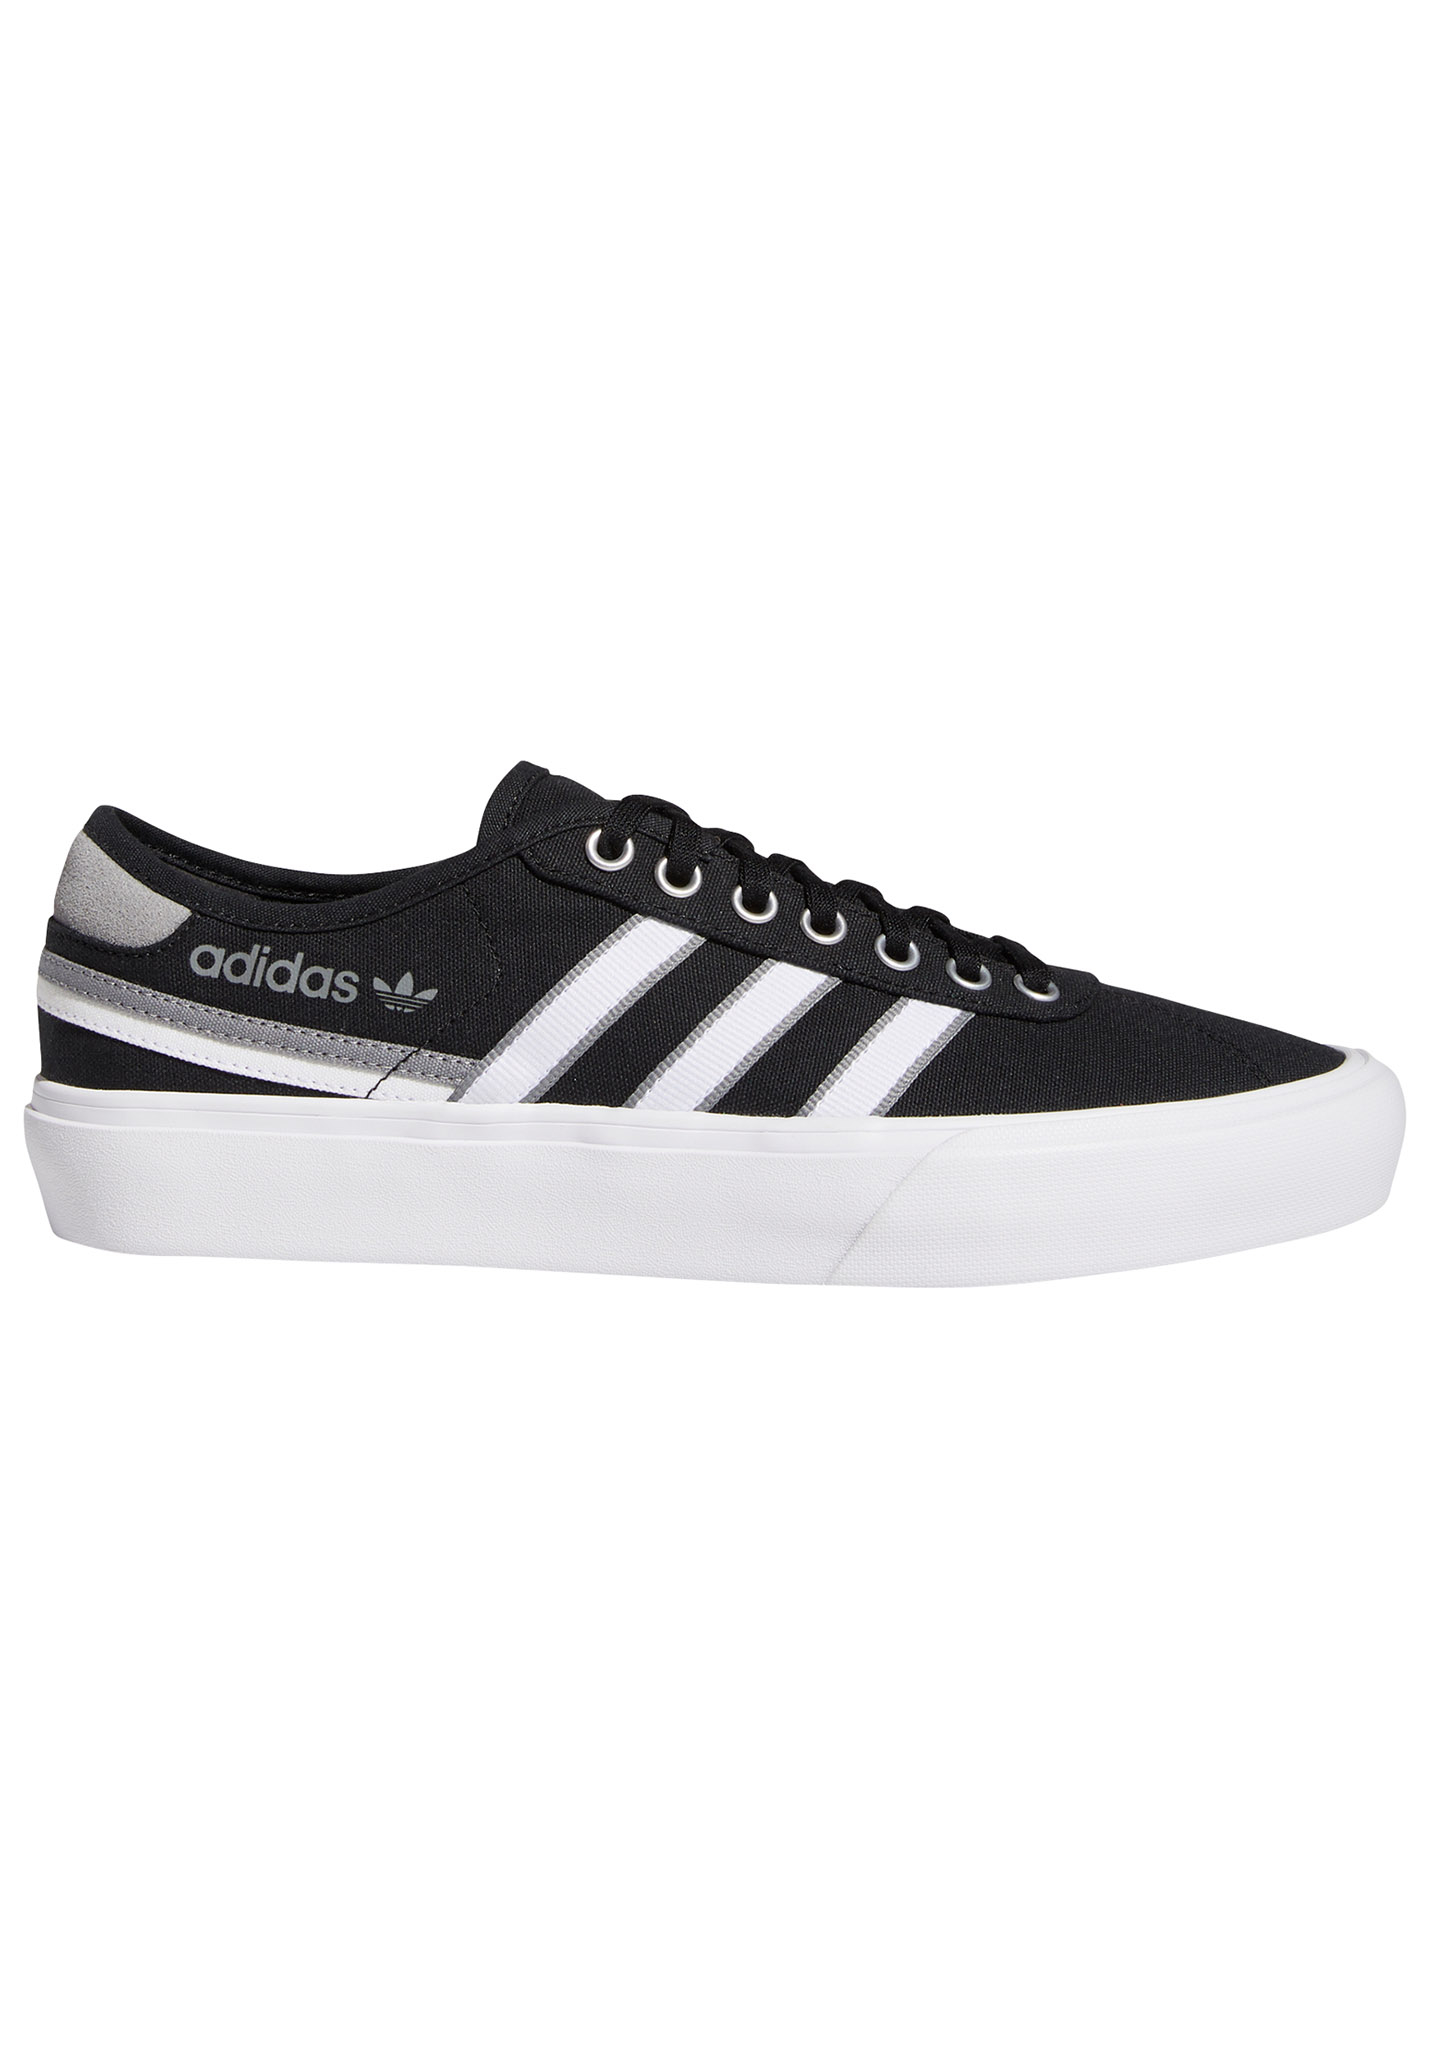 Adidas Originals Delpala Sneaker core black/footwear white/grey heather 46